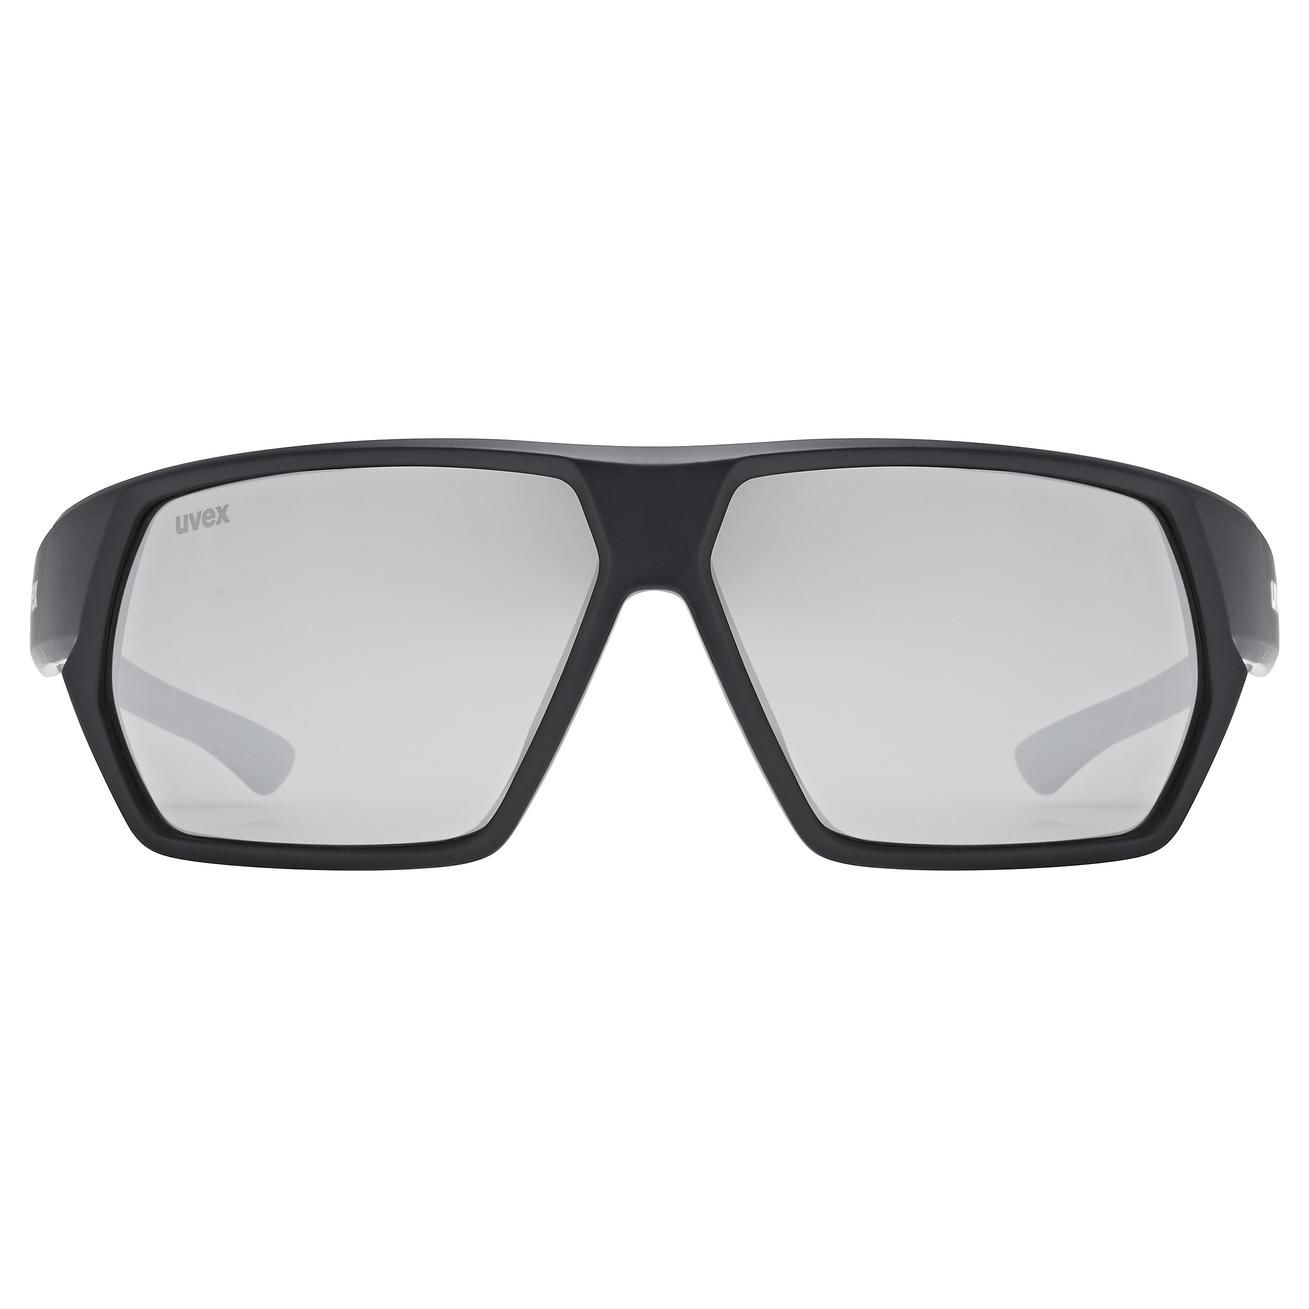 slnečné okuliare uvex sportstyle 238 black matt/silver